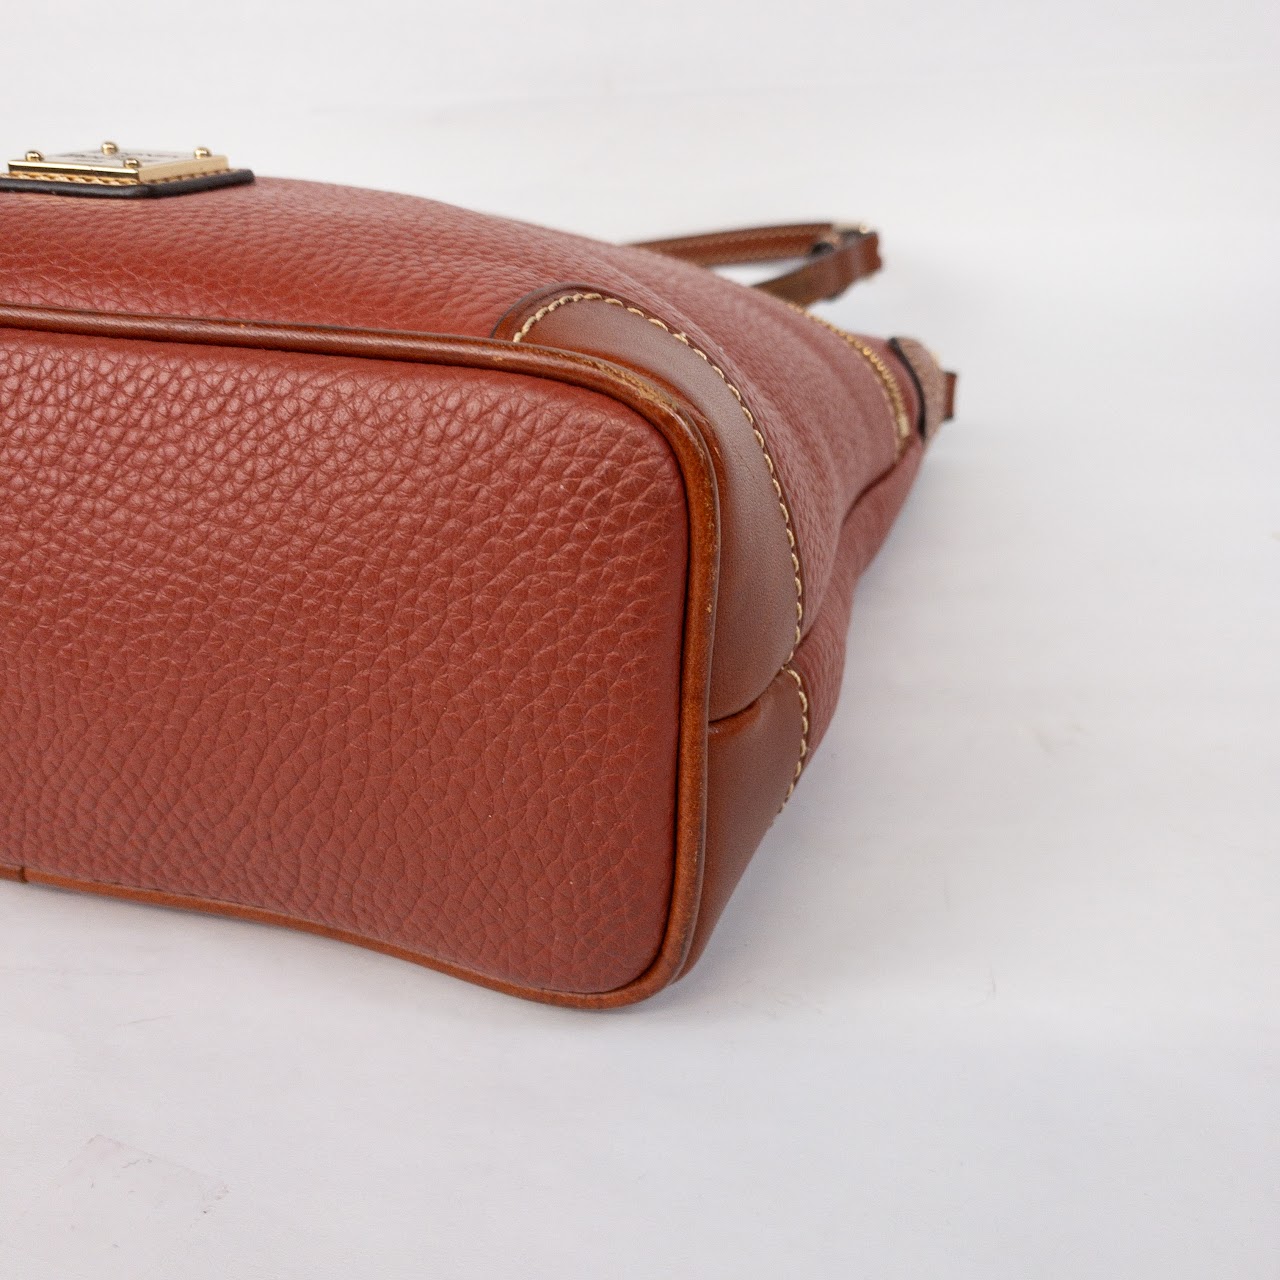 Dooney & Bourke Red Leather Shoulder Bag